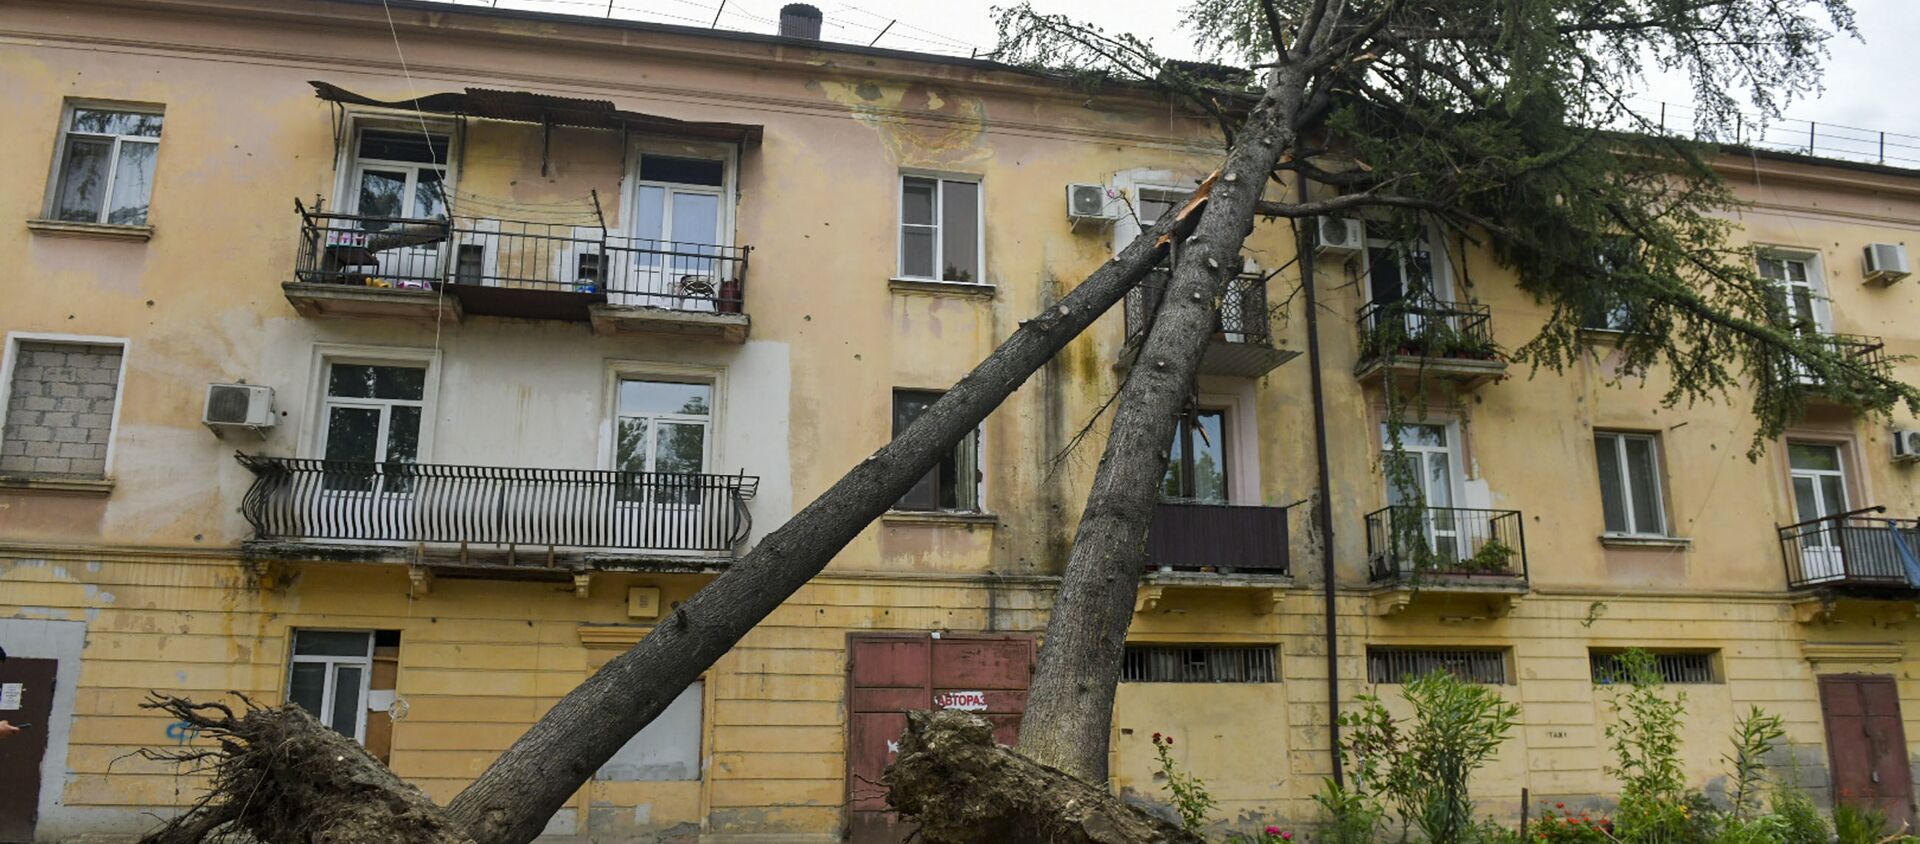 Сильный ветер в Сухуме повалил деревья  - Sputnik Абхазия, 1920, 09.07.2021